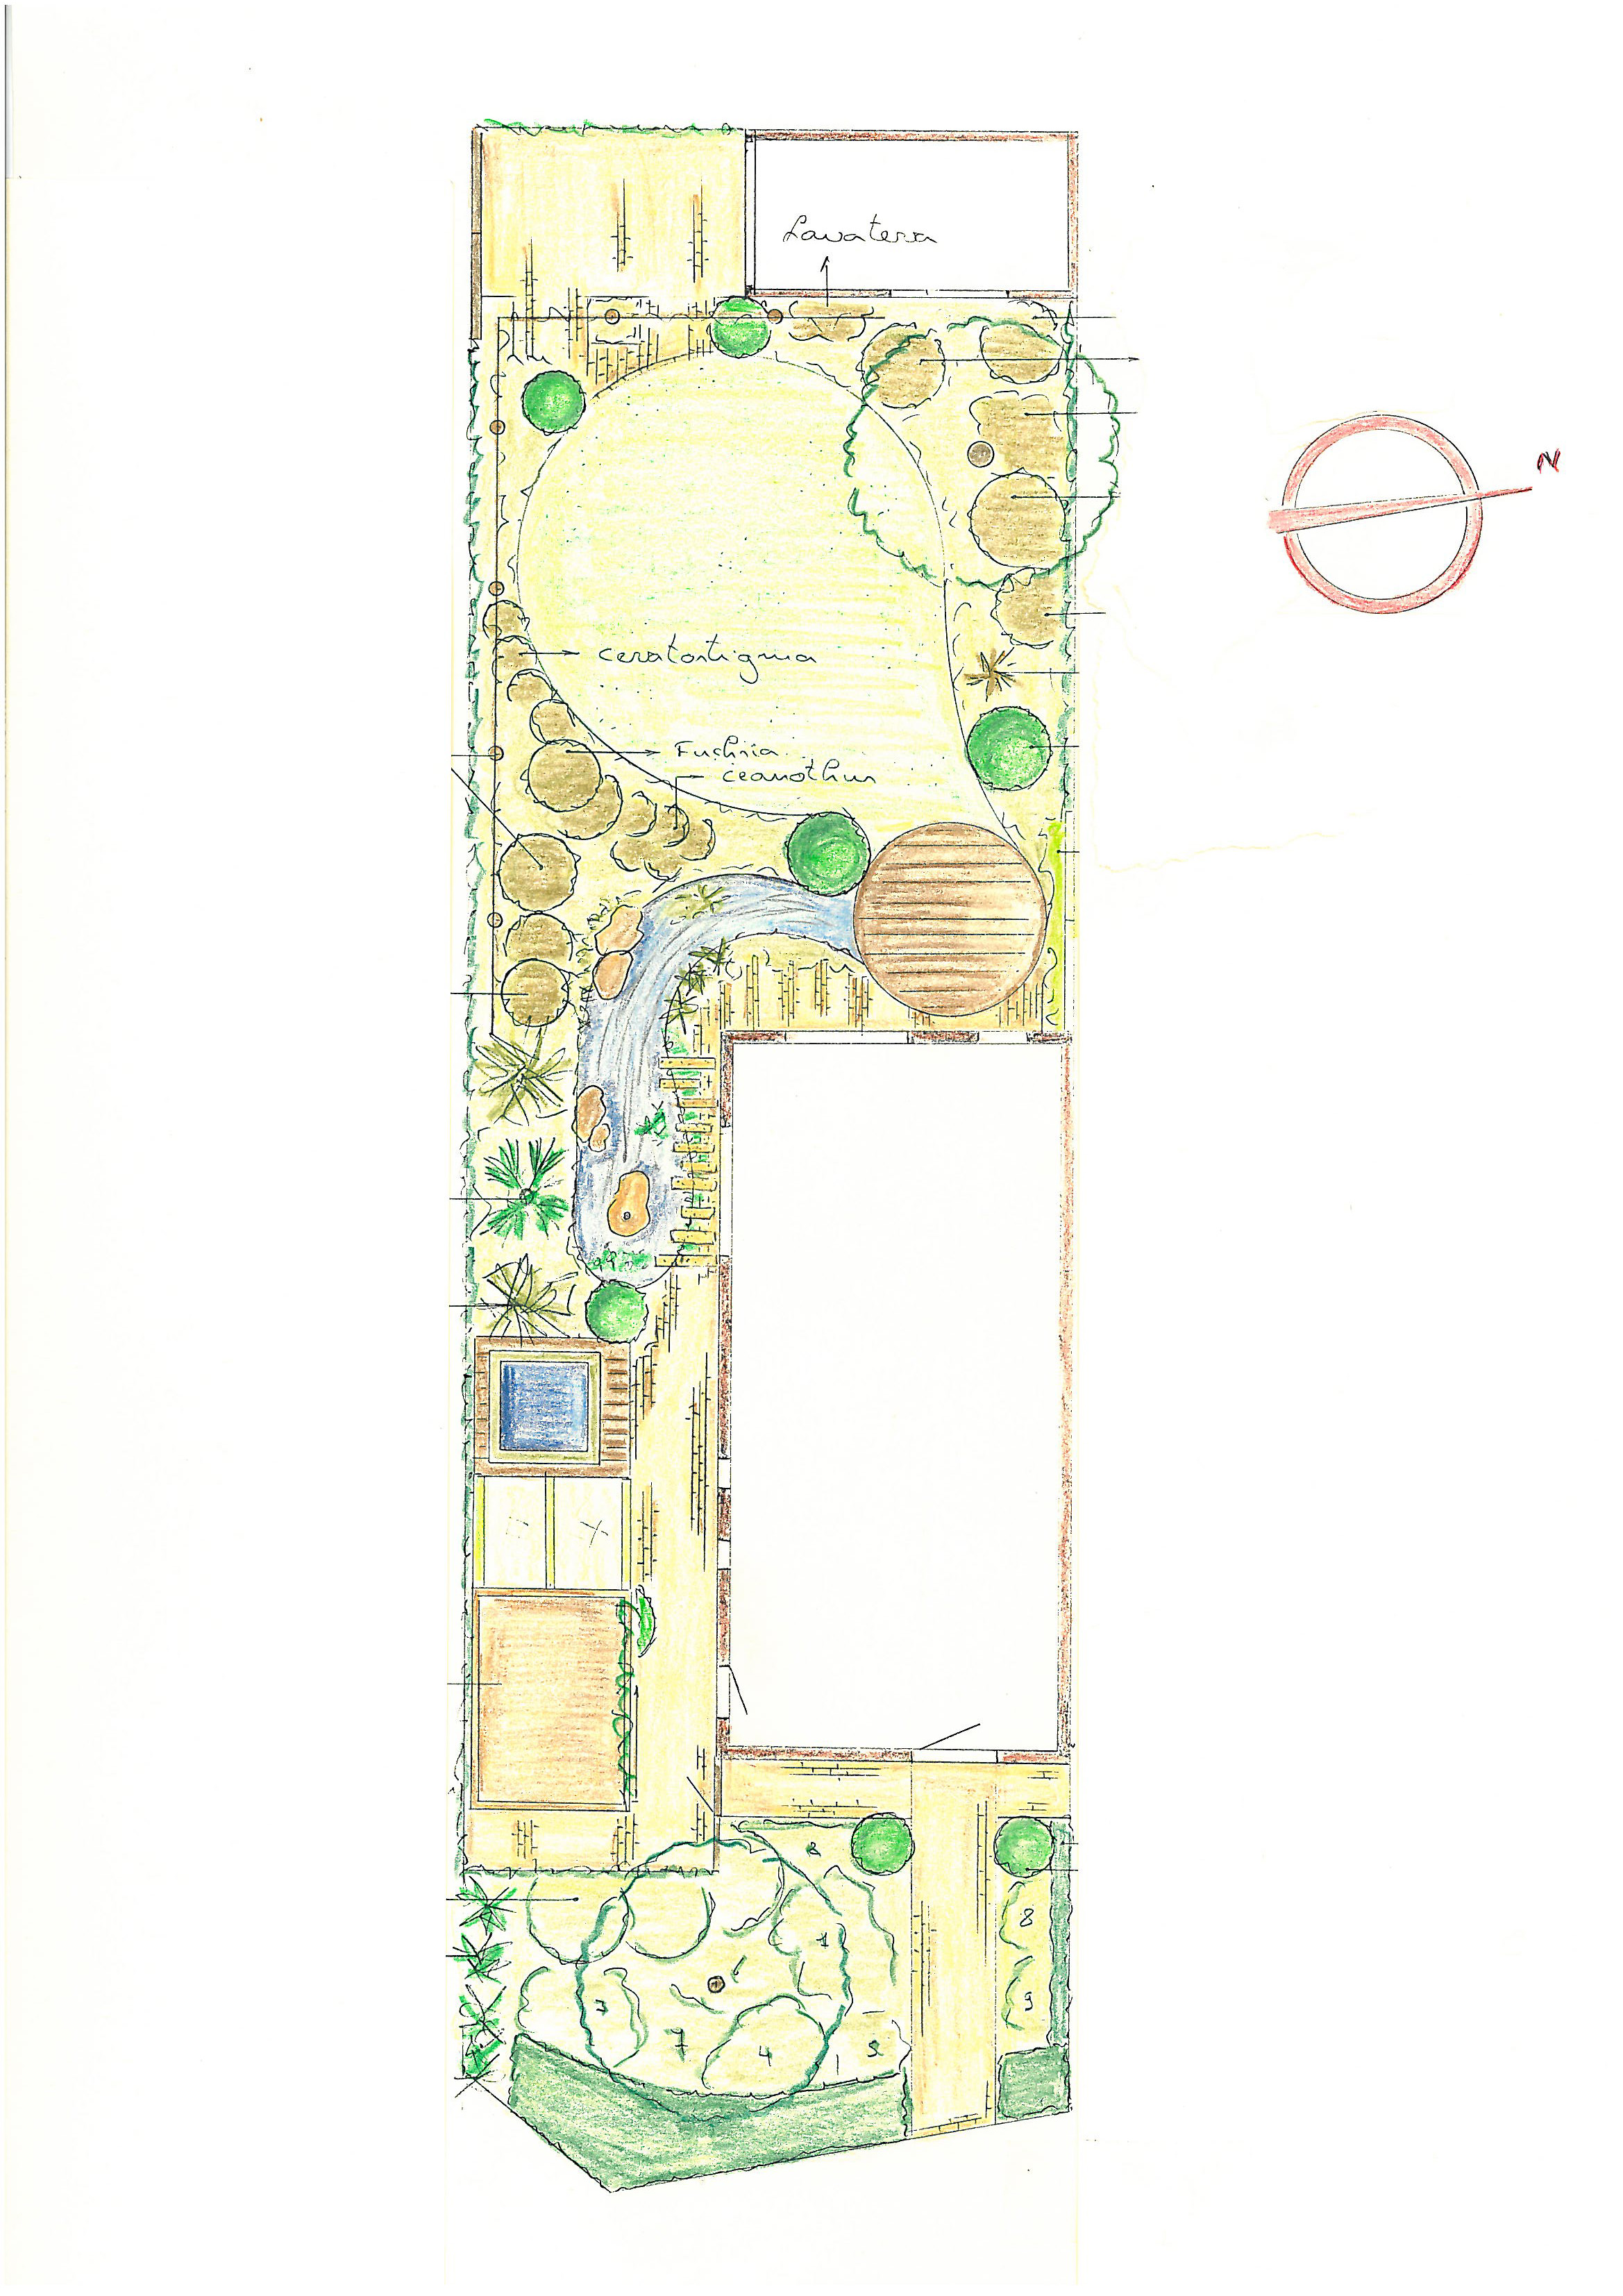 Voorbeeldplan van een tuinontwerp